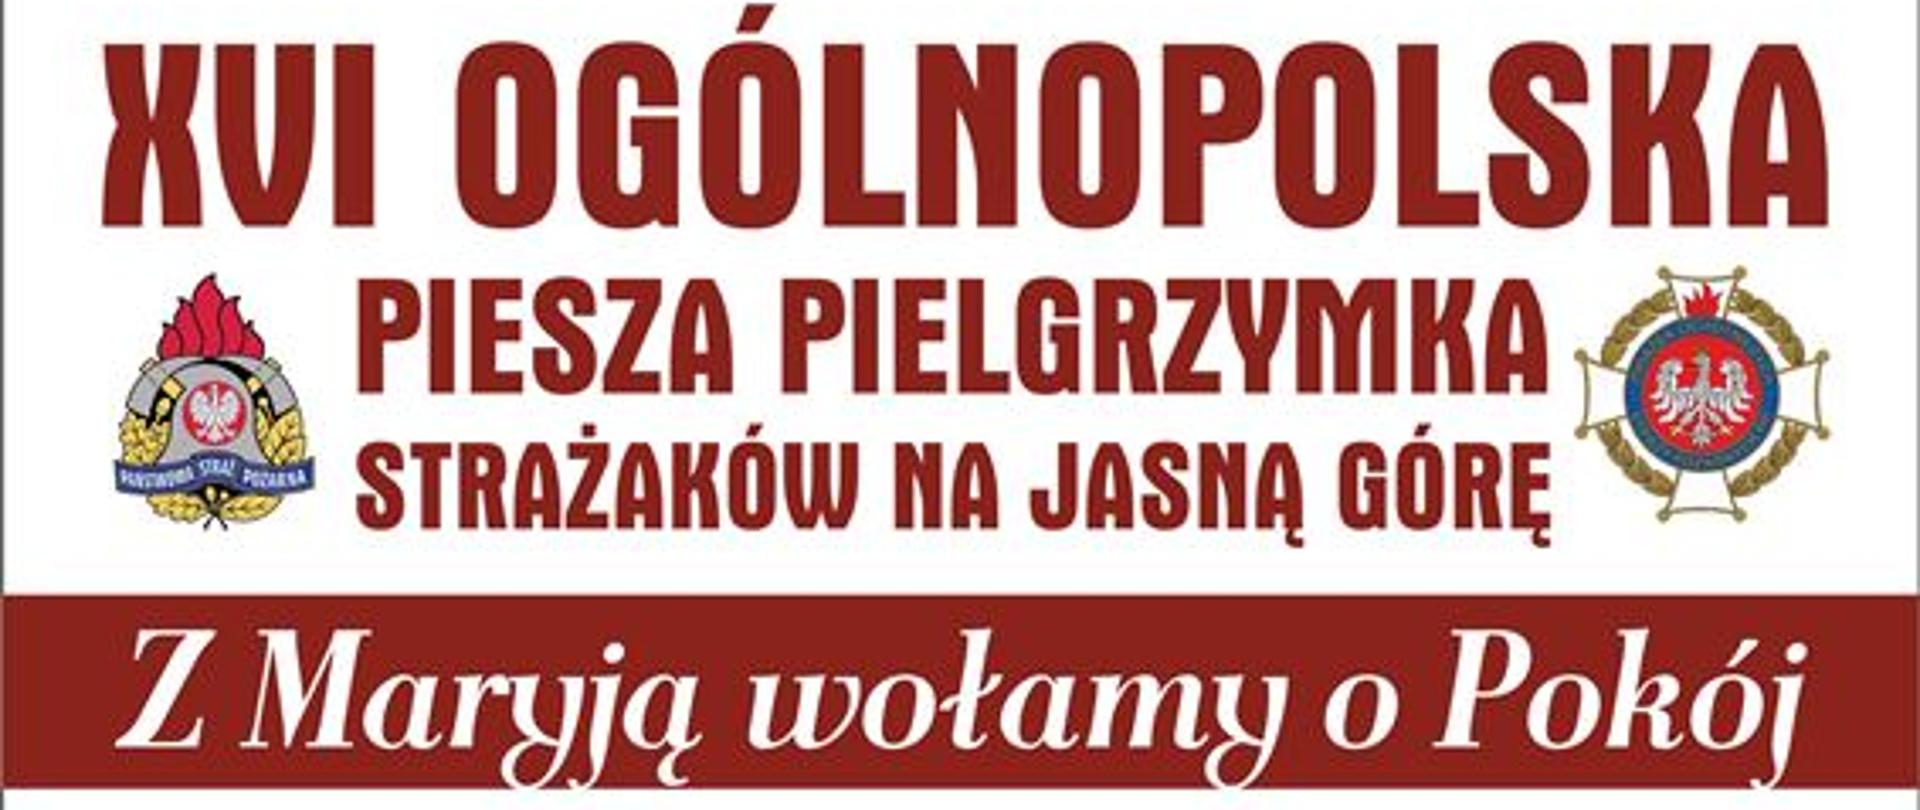 Plakat promujący XVI Ogólnopolską Pieszą Pielgrzymkę Strażaków na Jasną Górę